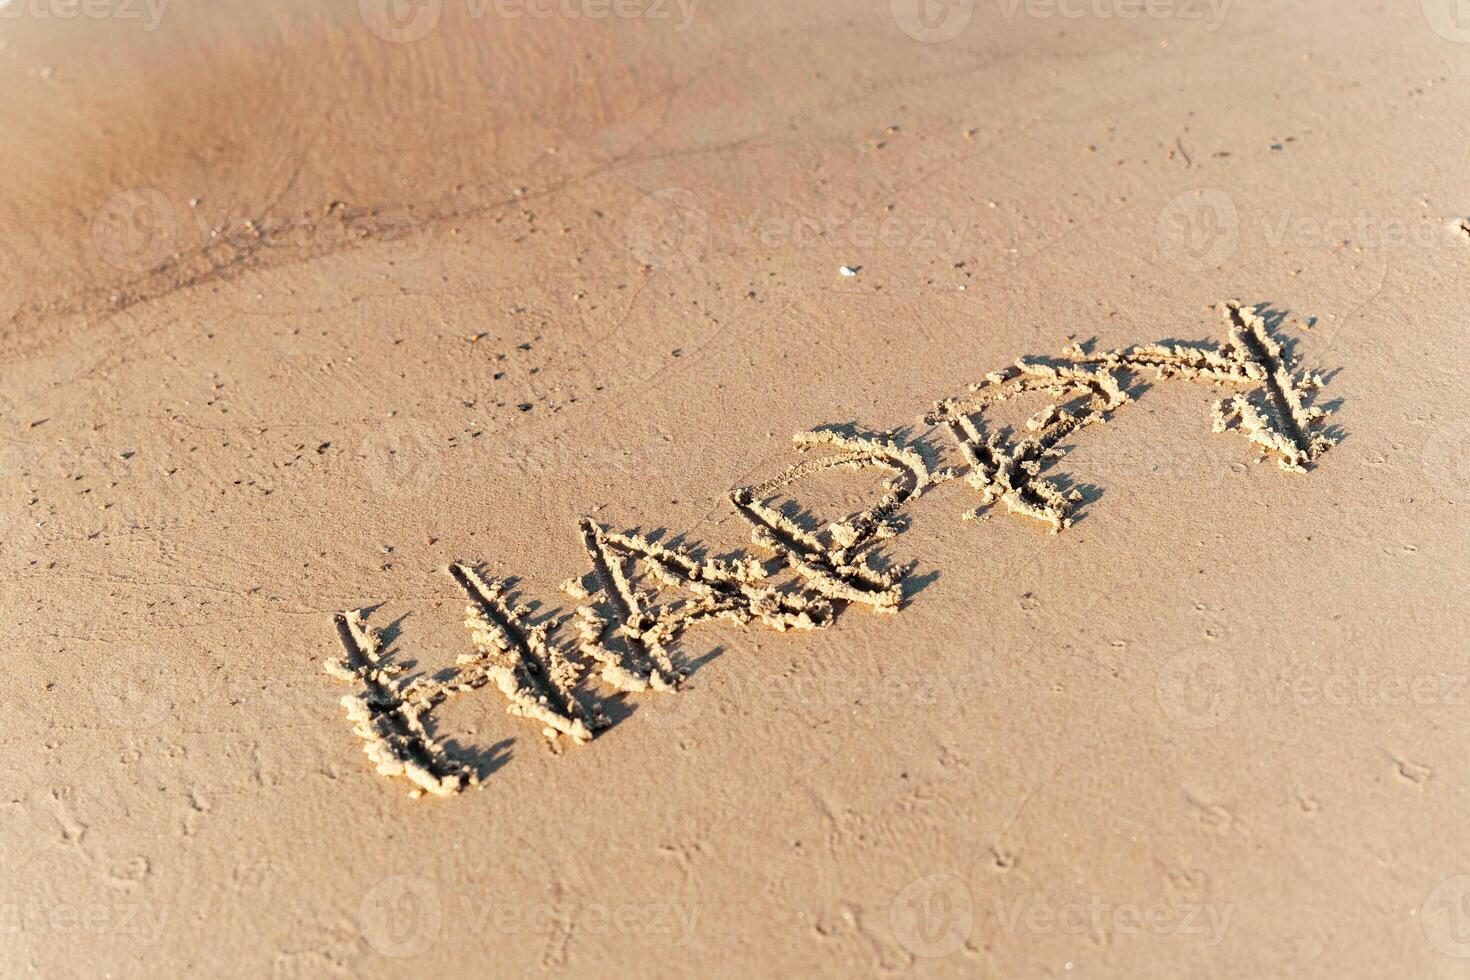 inskrift 'lycka' på de strand sand som en symbol av glädje och positivitet foto